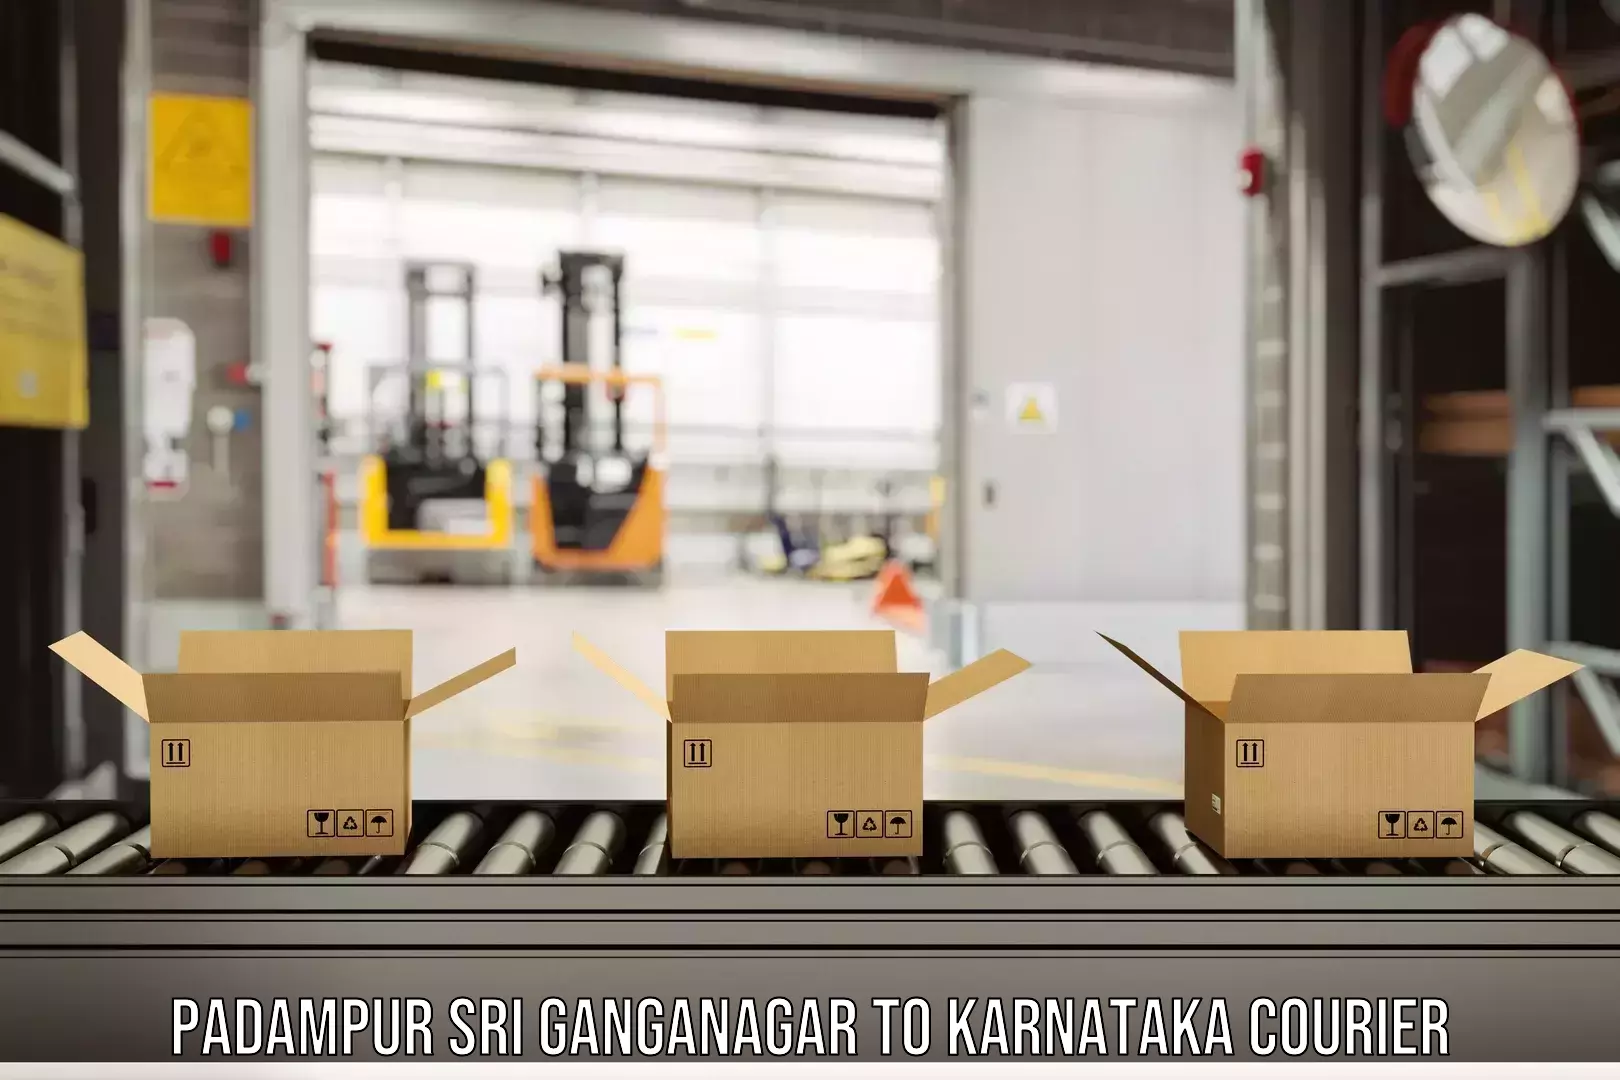 Express logistics service Padampur Sri Ganganagar to Byndoor